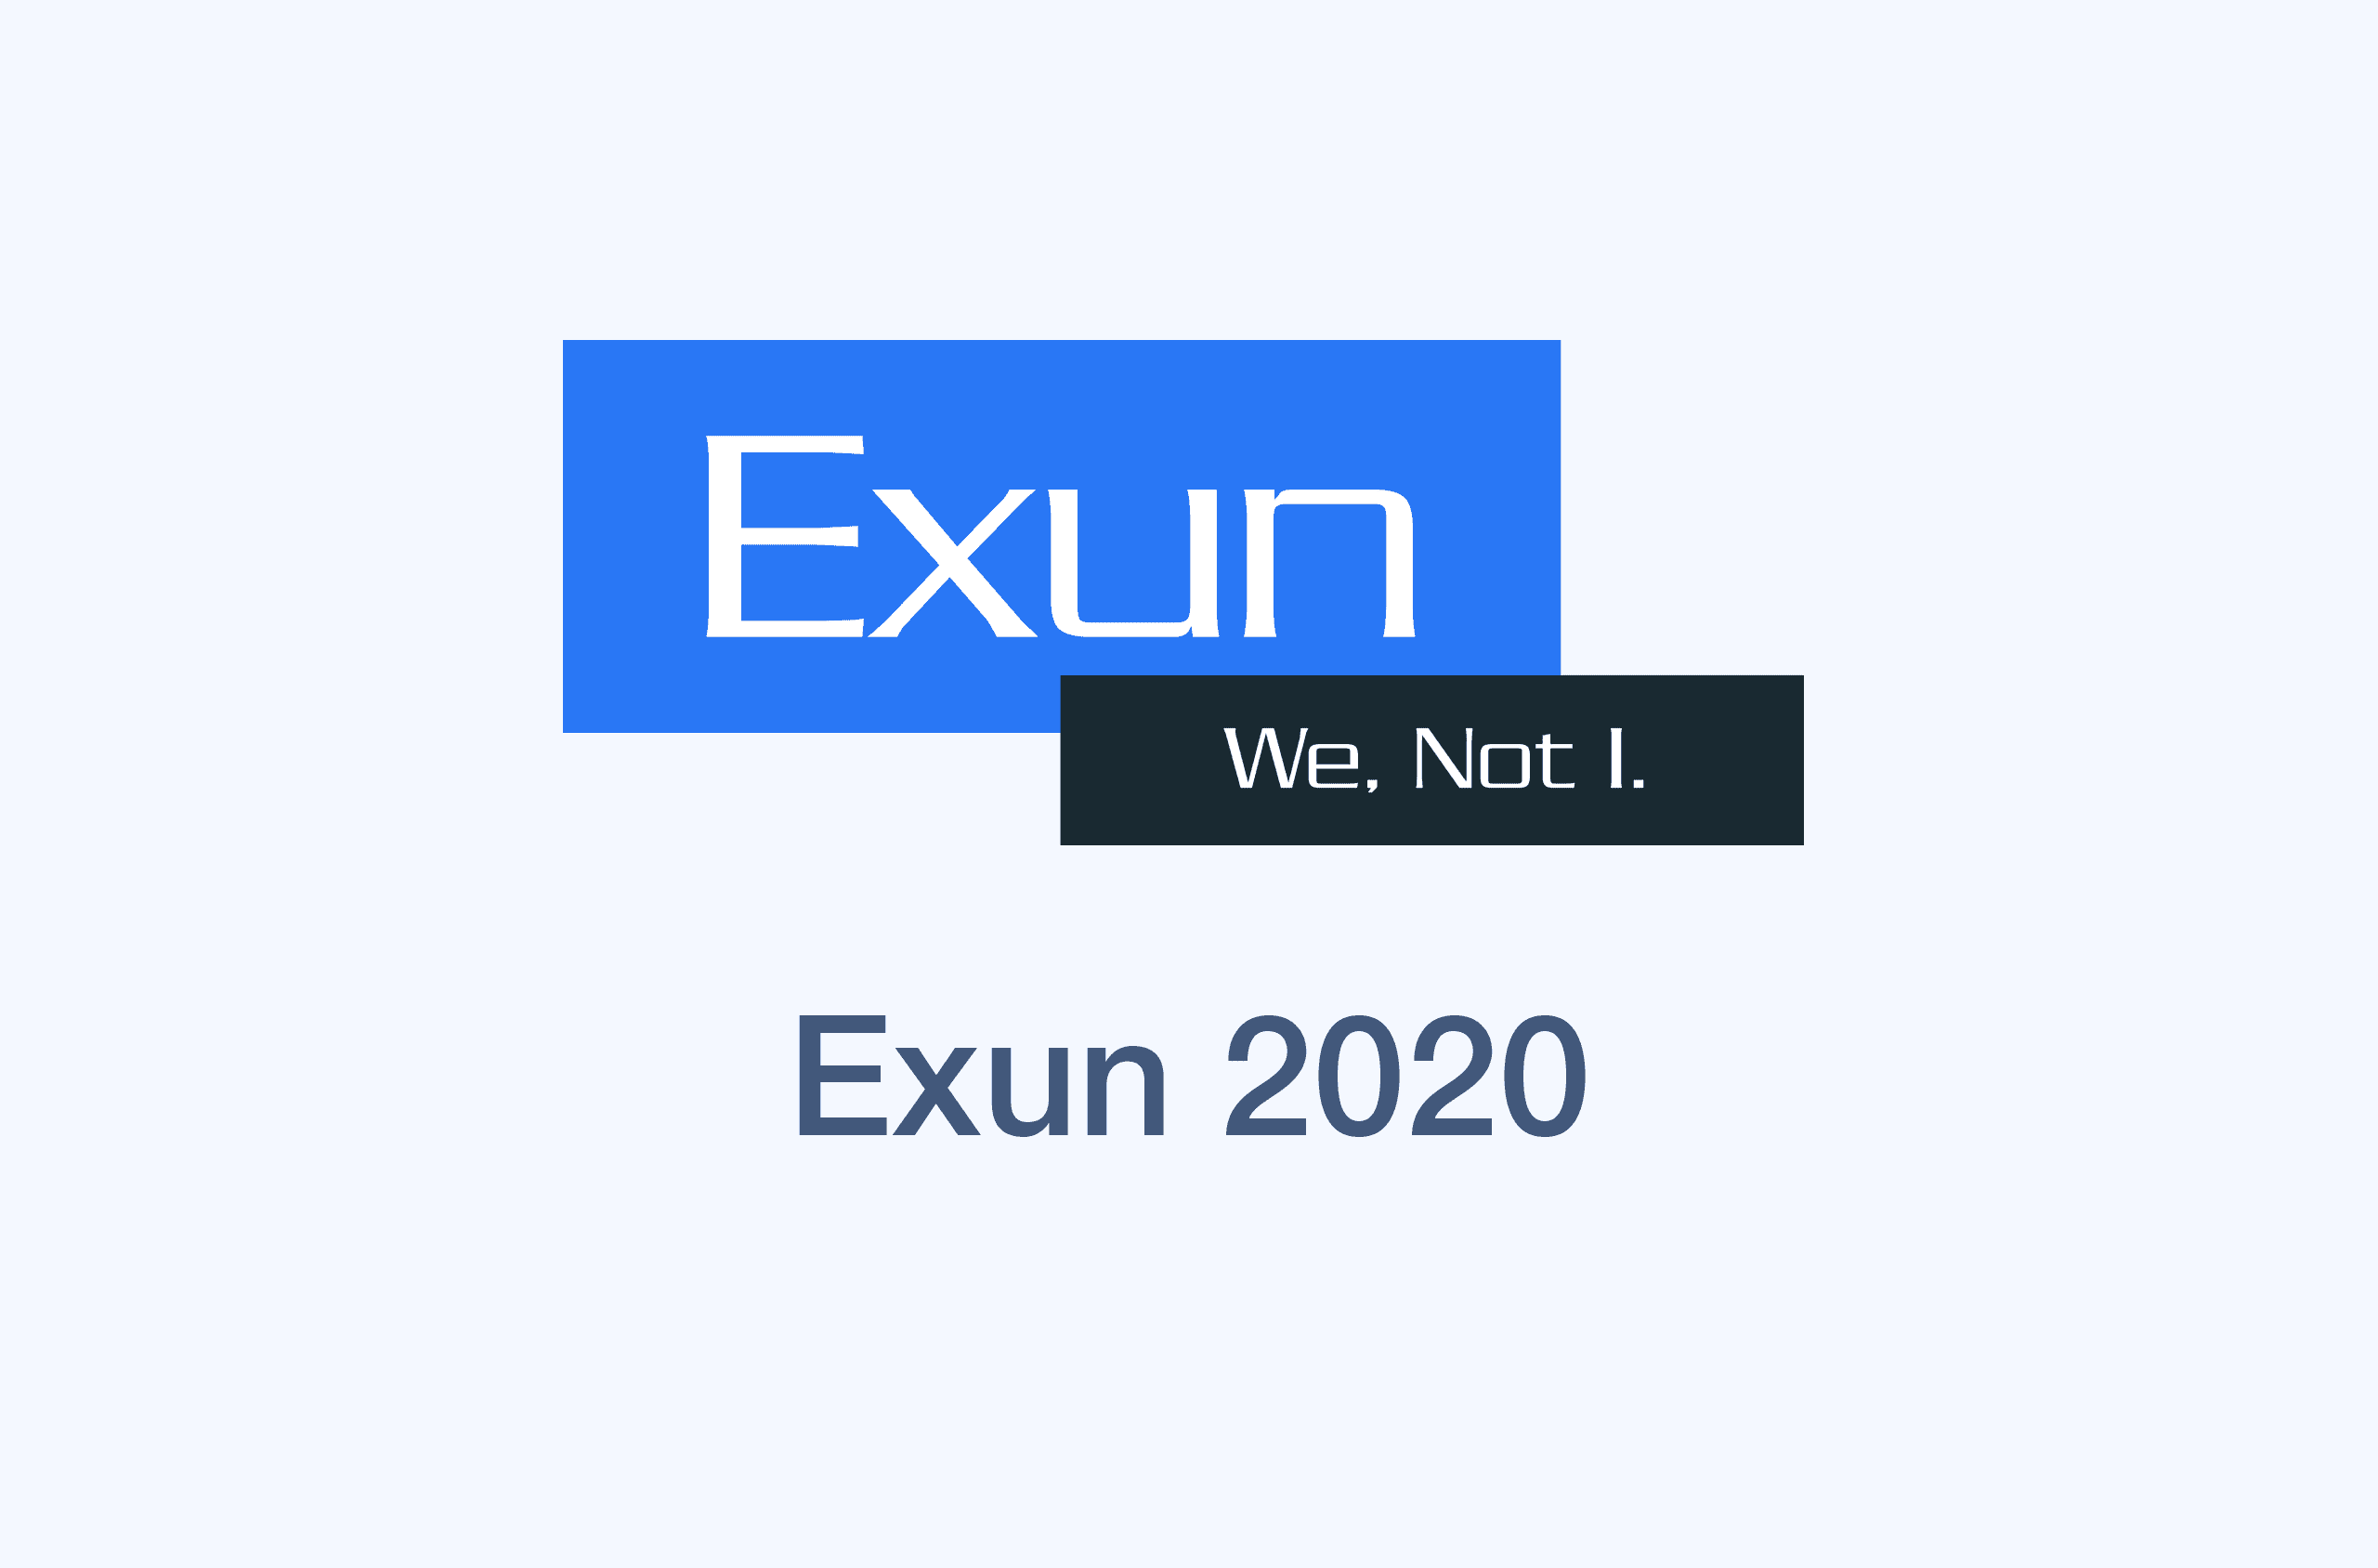 Exun 2020's image